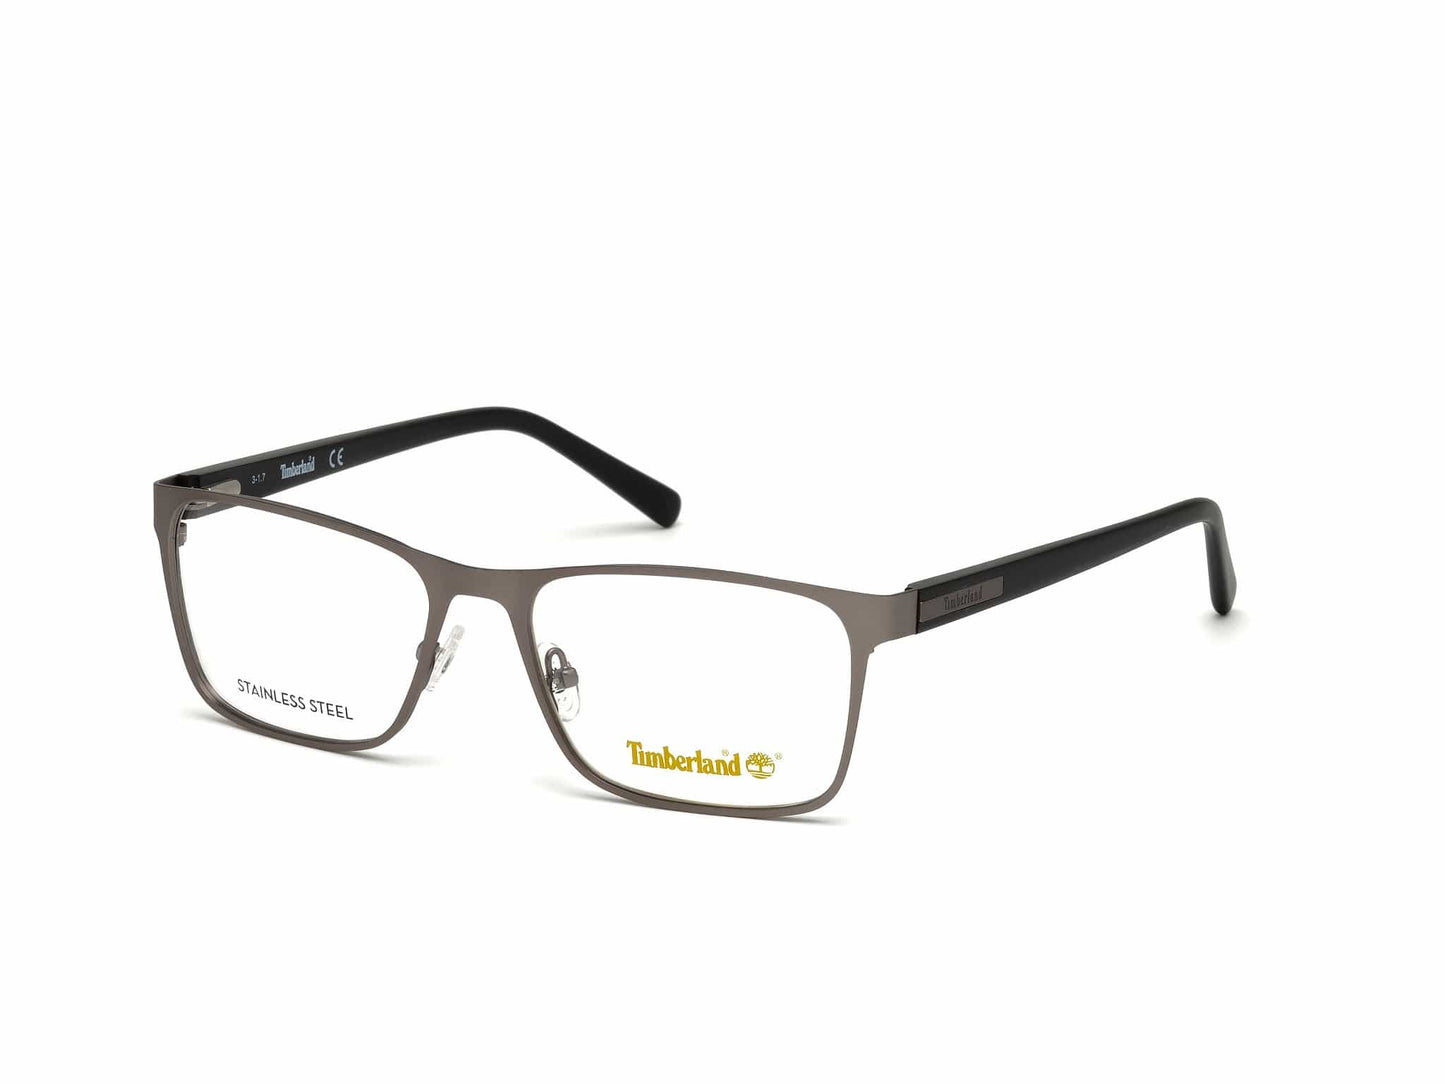 Timberland TB1578 Rectangular Eyeglasses 009-009 - Matte Gunmetal